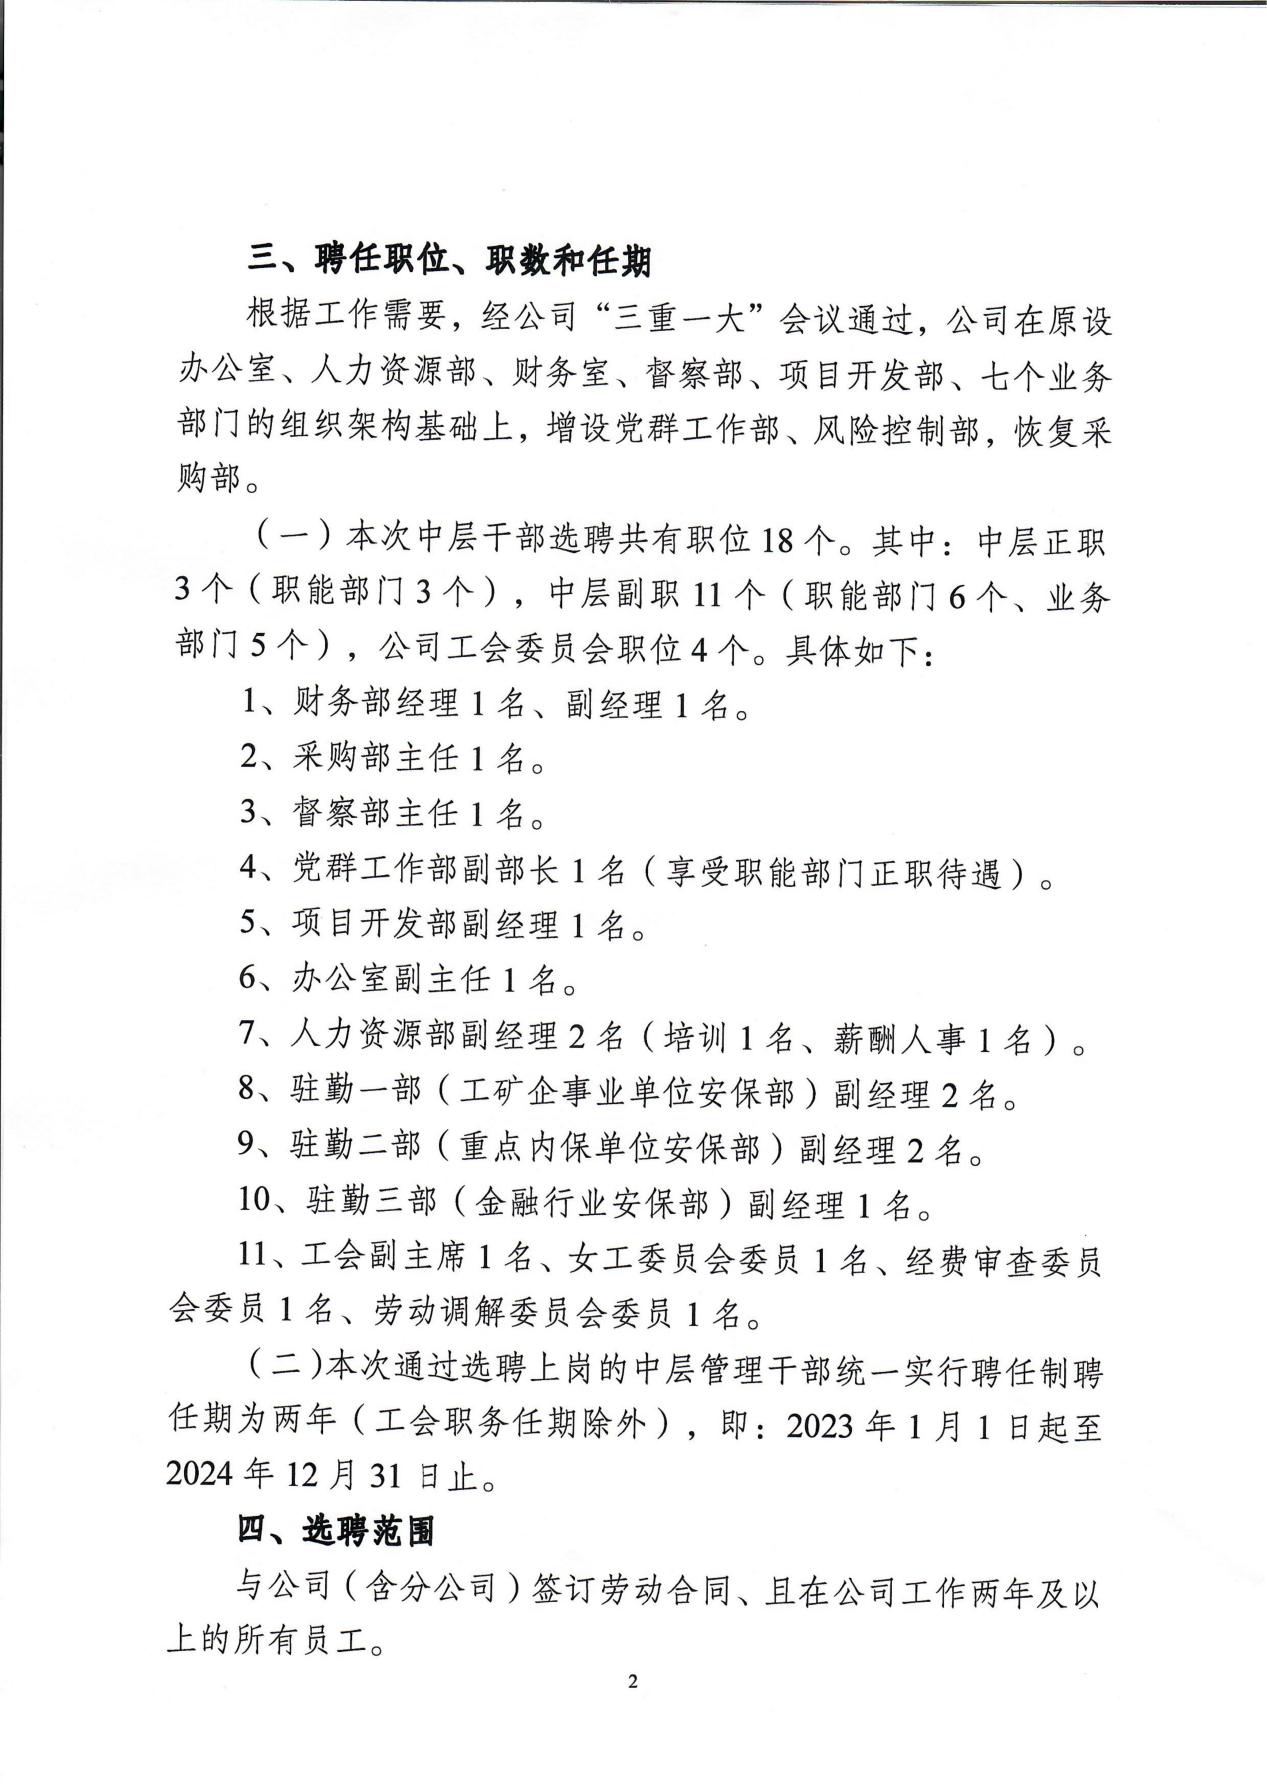 南京市保安服务有限公司关于中层干部竞聘工作的实施意见_01